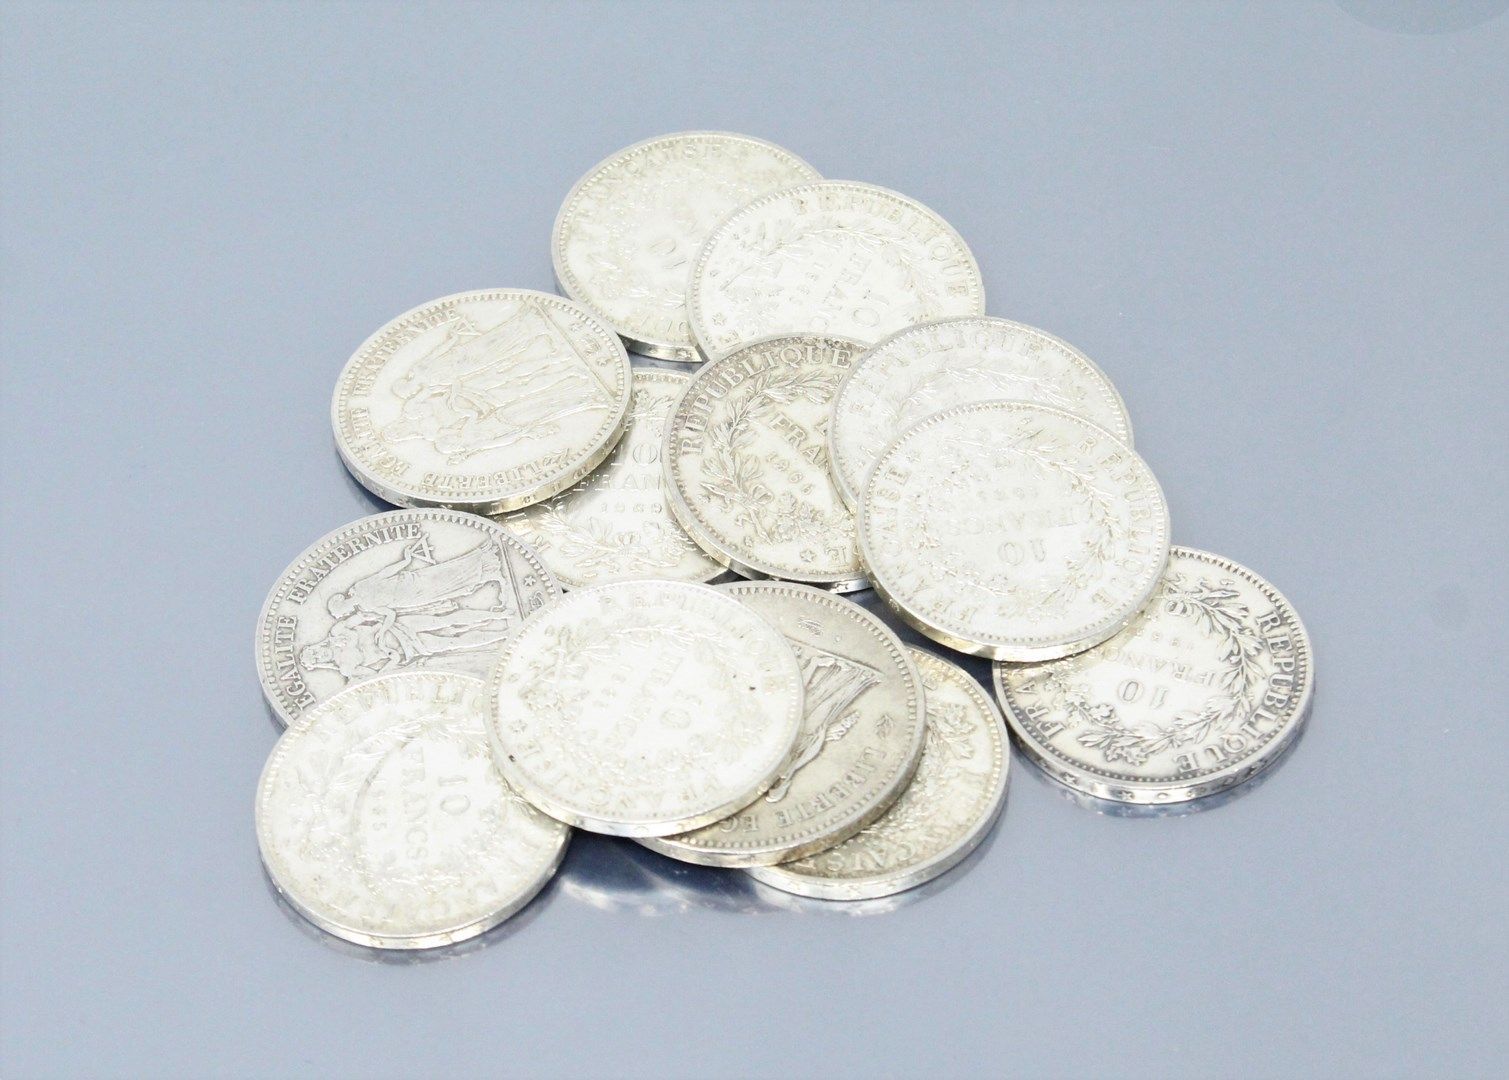 Null Monete d'argento del tipo "Ercole":

- 50 F : 1976

- 10 F : 1965 (x6) - 19&hellip;